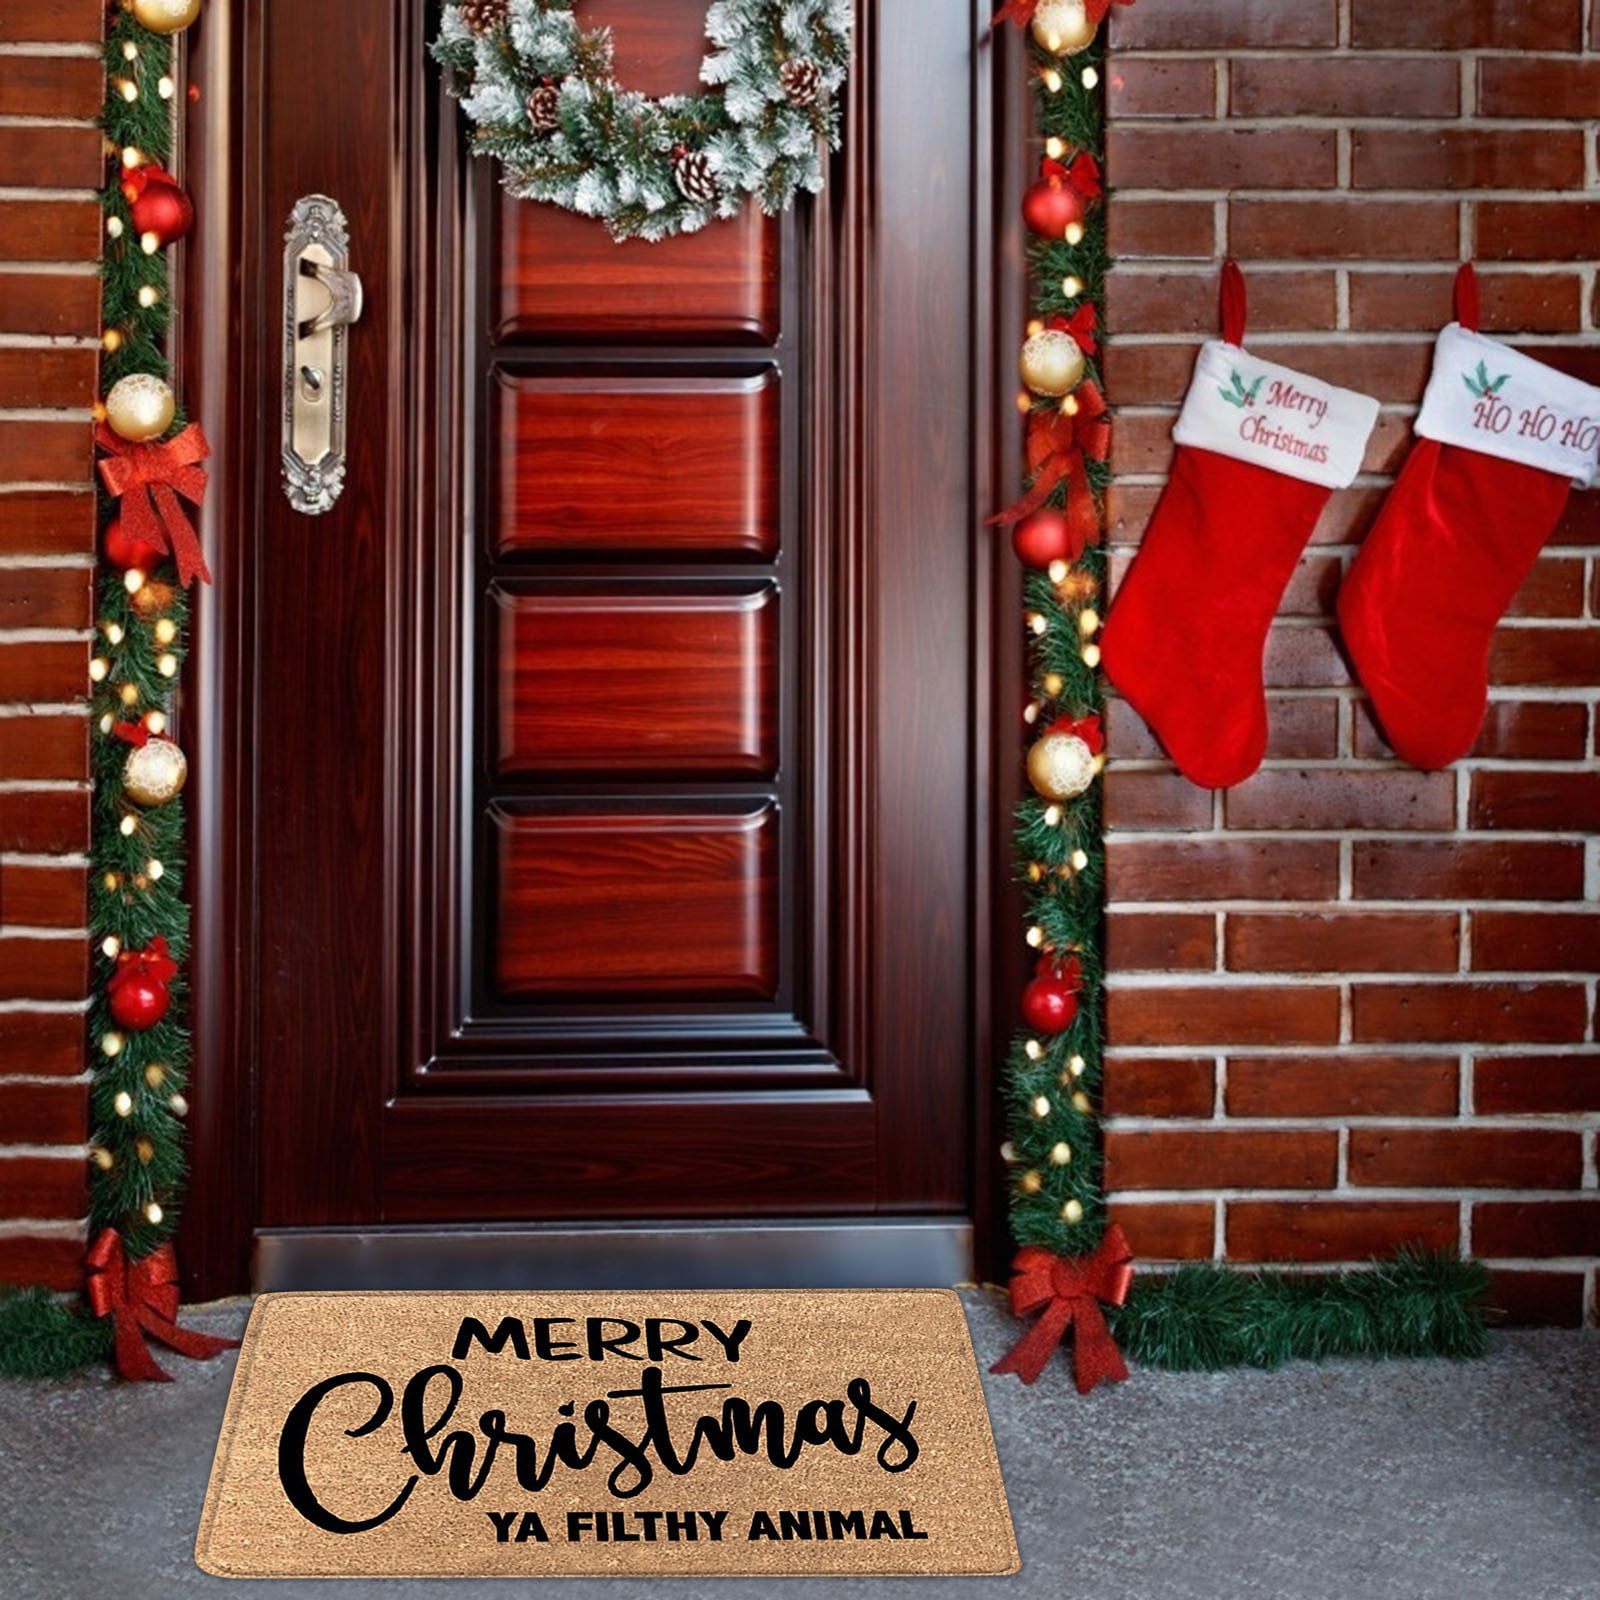 Clearanceeqwljwe Merry Christmas Door Mat Welcome Decor Christmas Floor Mat Outdoor Mats for Front Door,Indoor Mats for Entryway,24x16 inch,Burlap